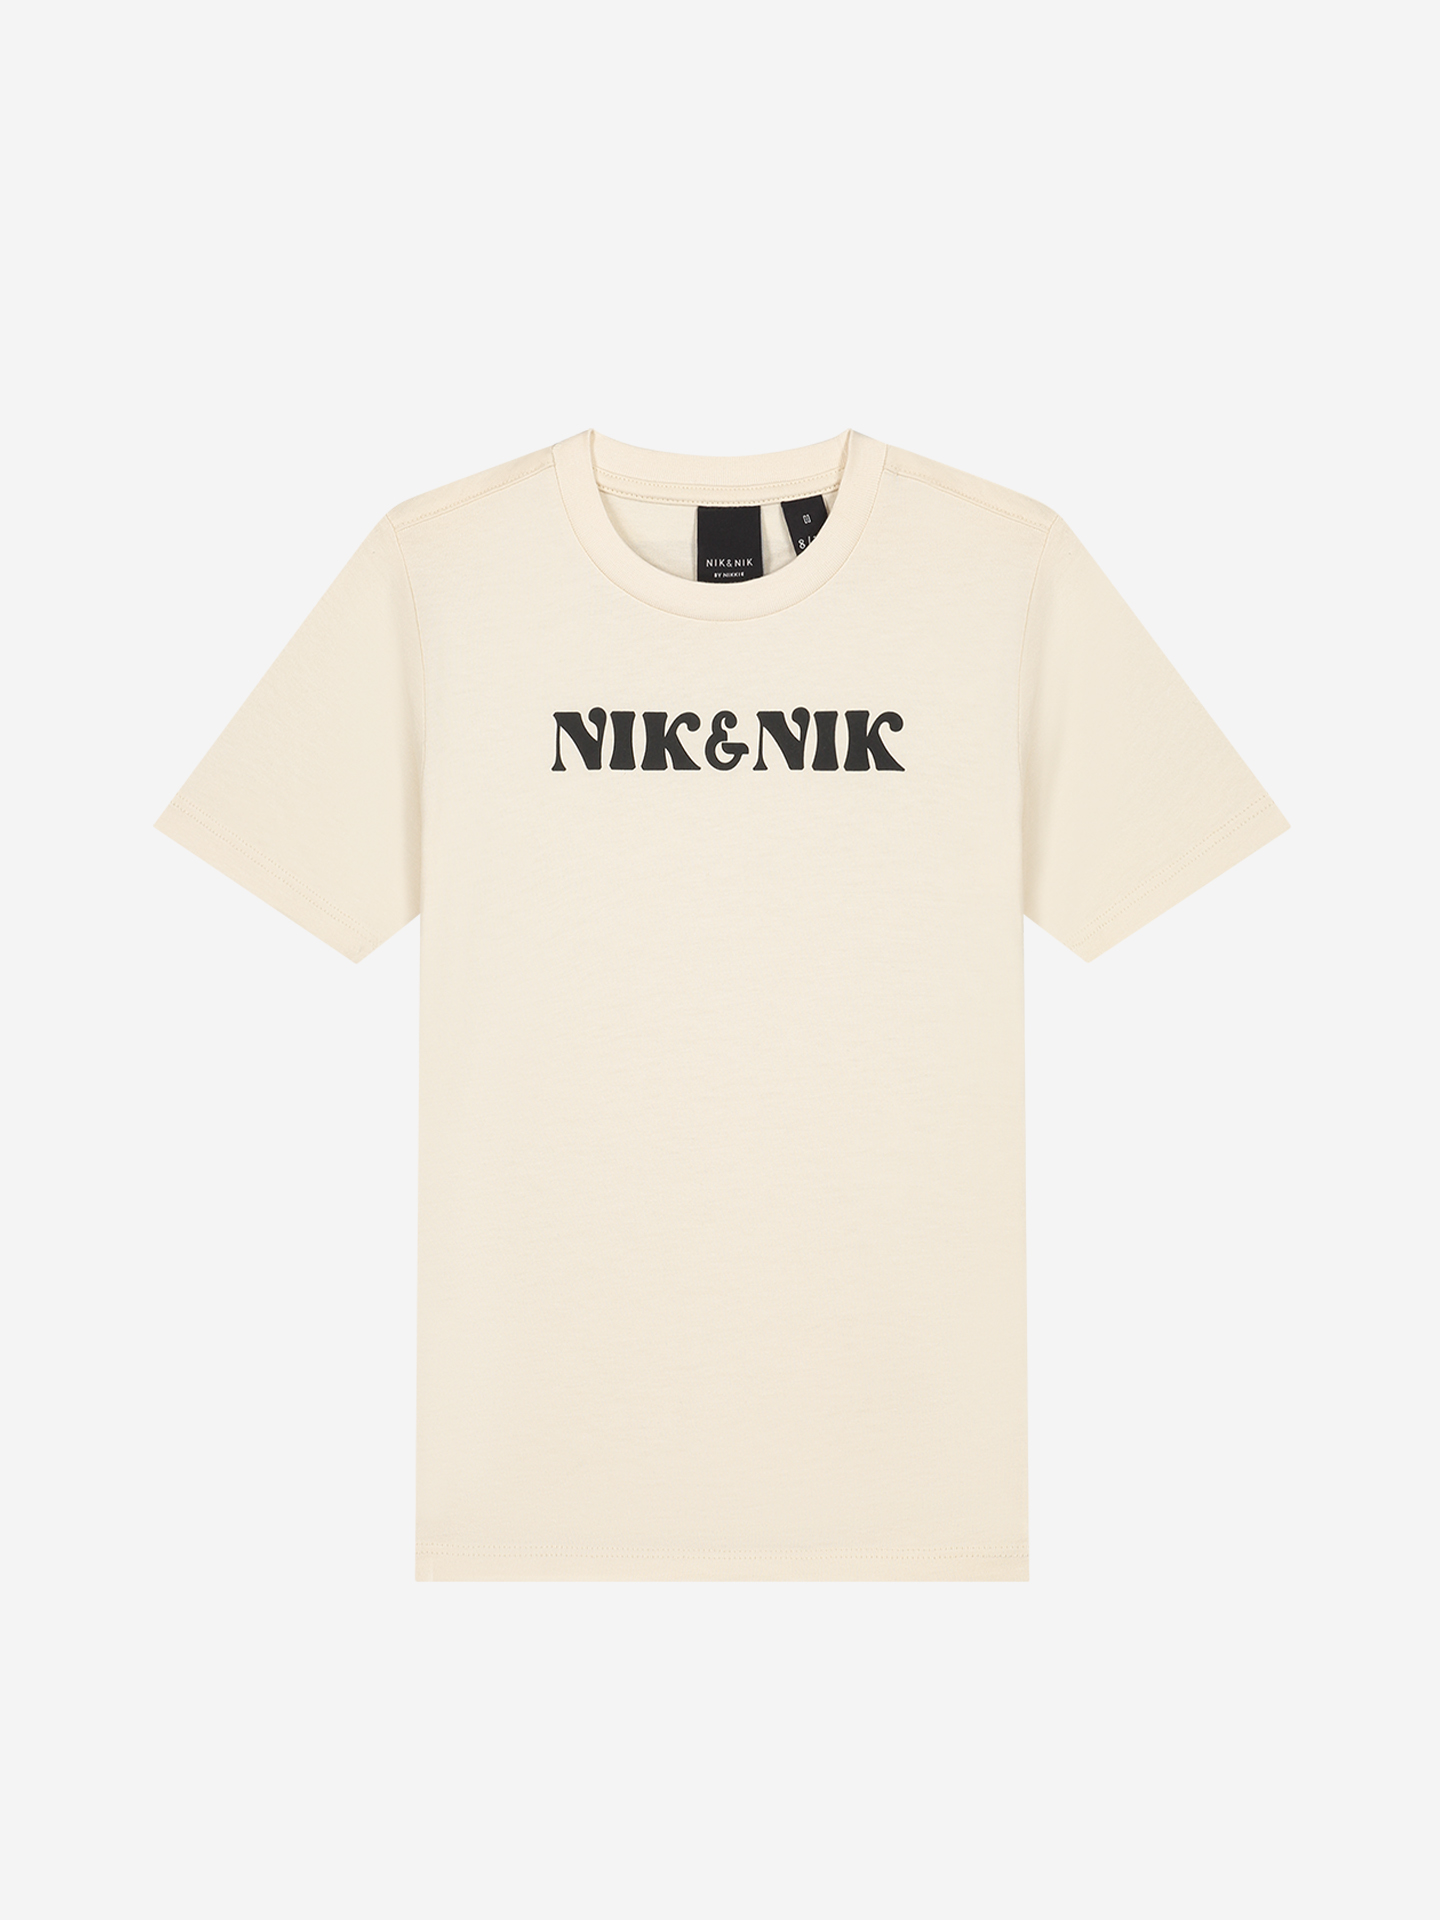 NIK&NIK t-shirt with artwork